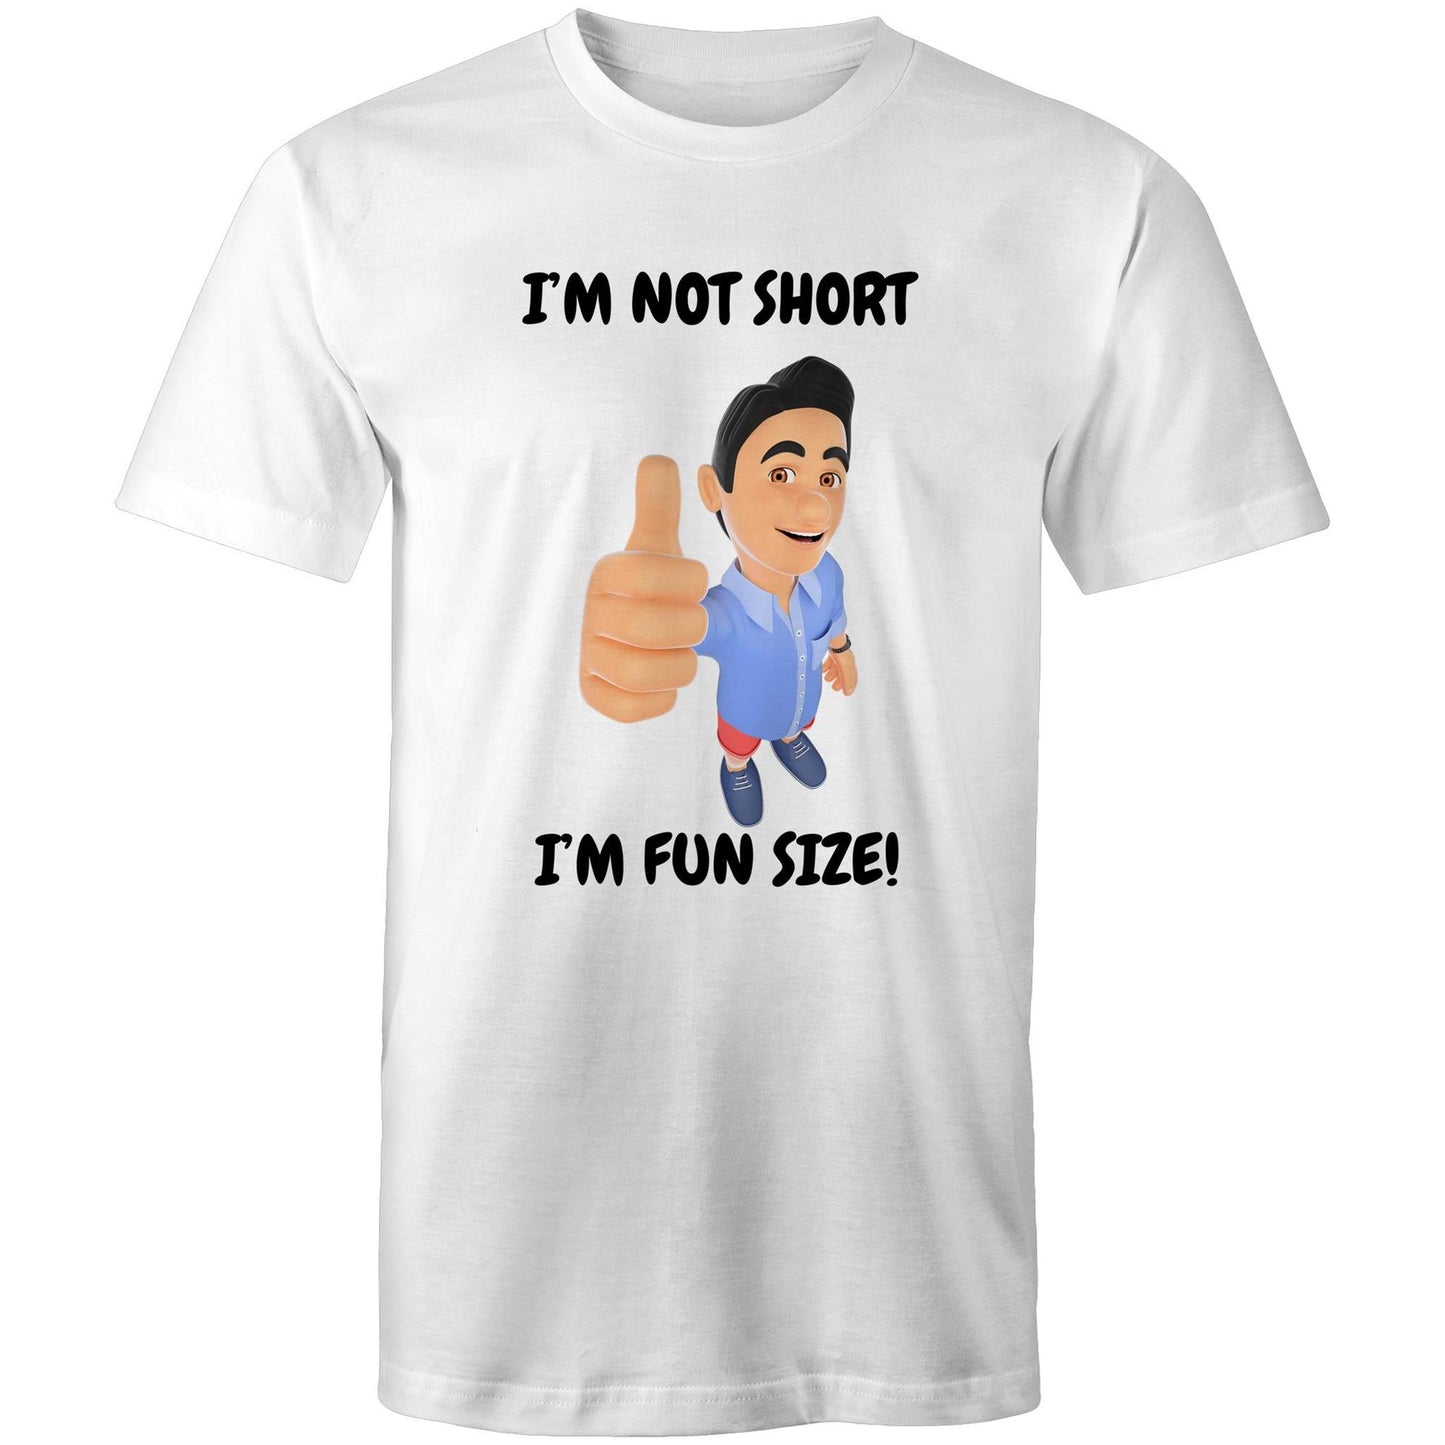 I'm not short t-shirt